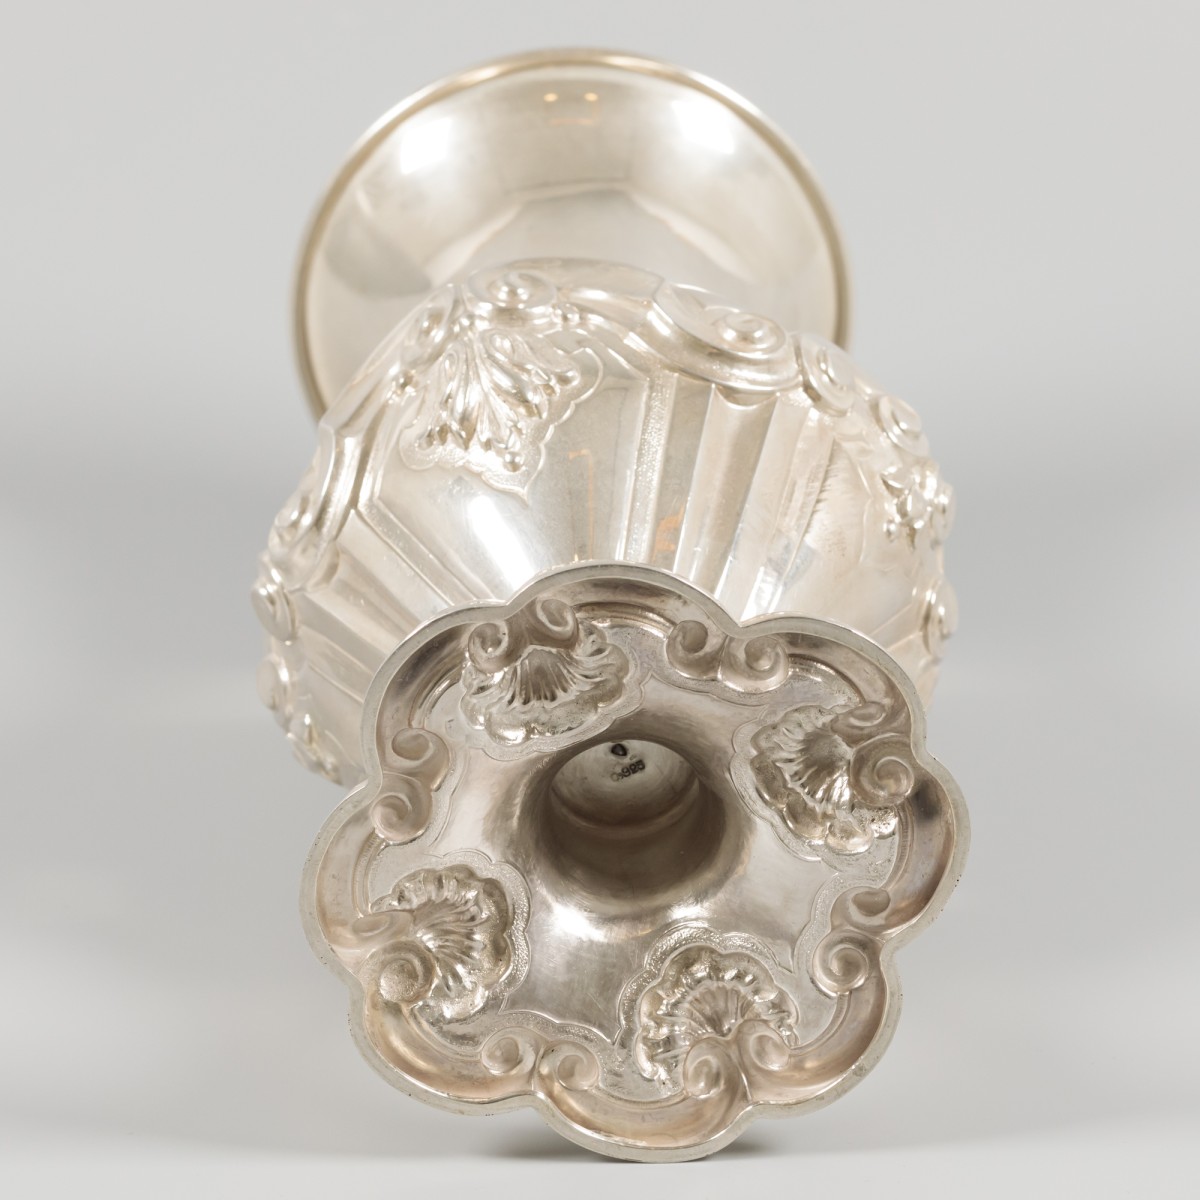 Flower vase silver. - Image 3 of 6